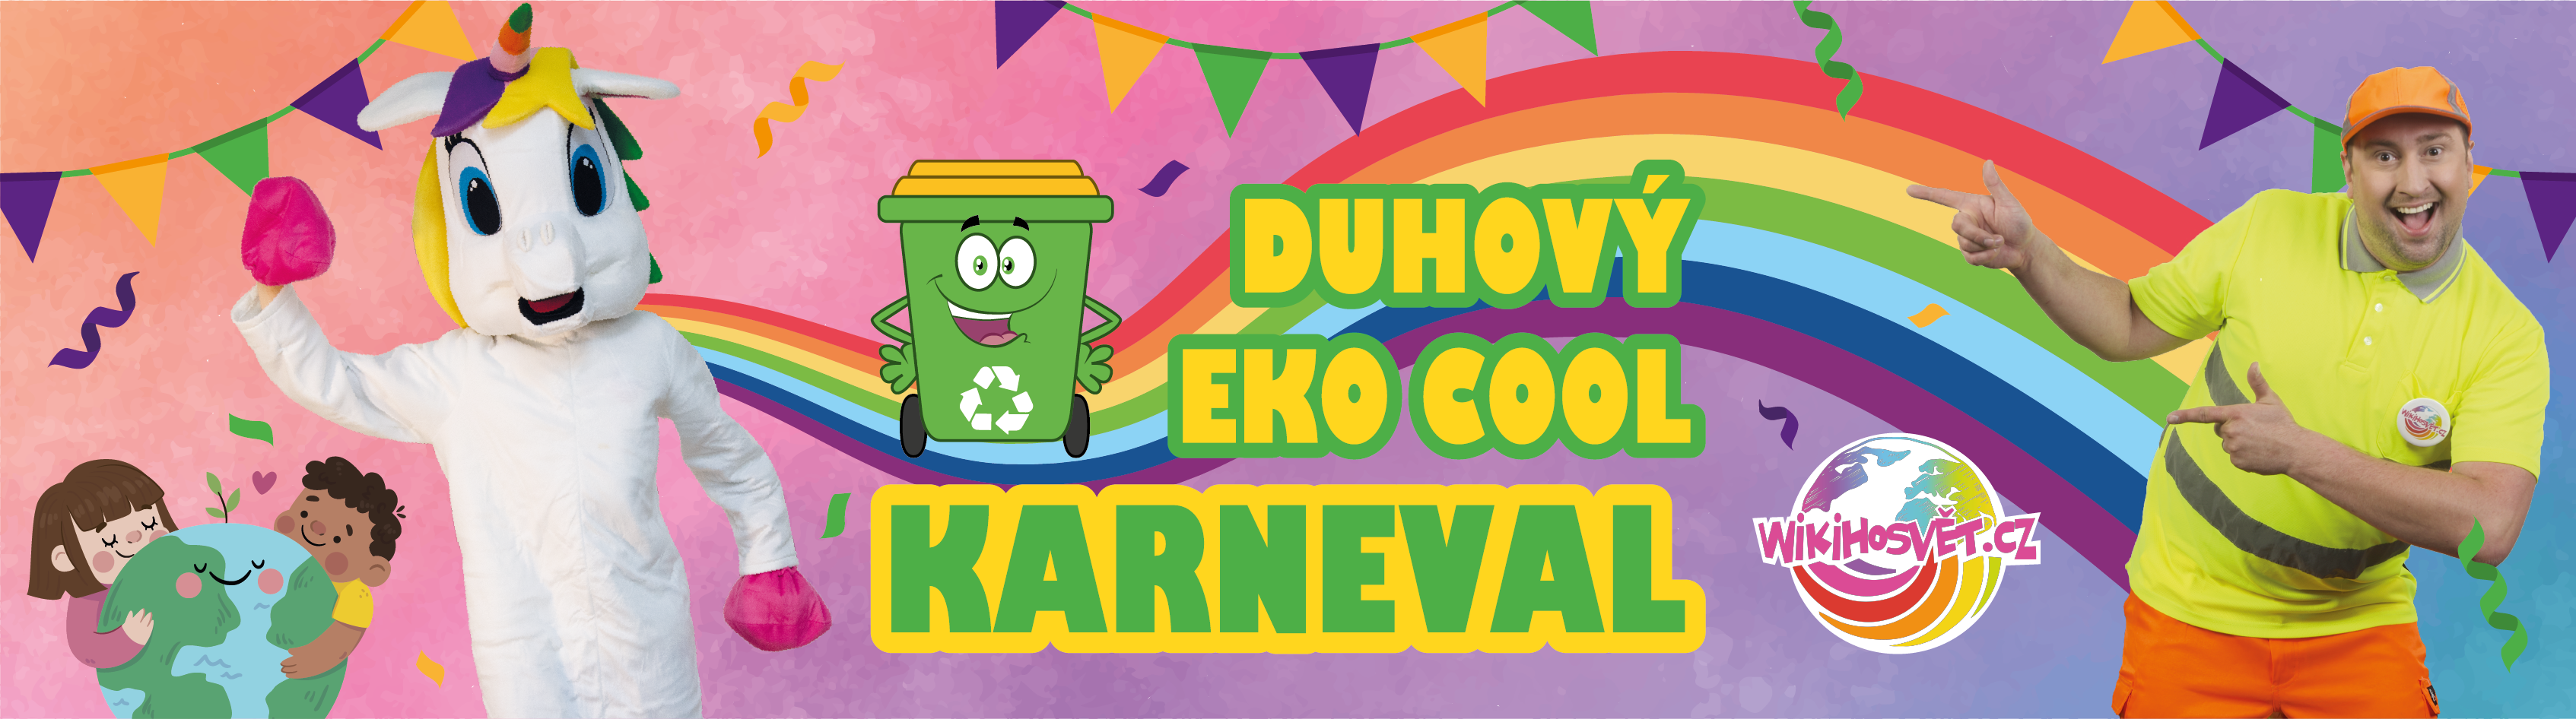 Duhový-eco-cool-karneval